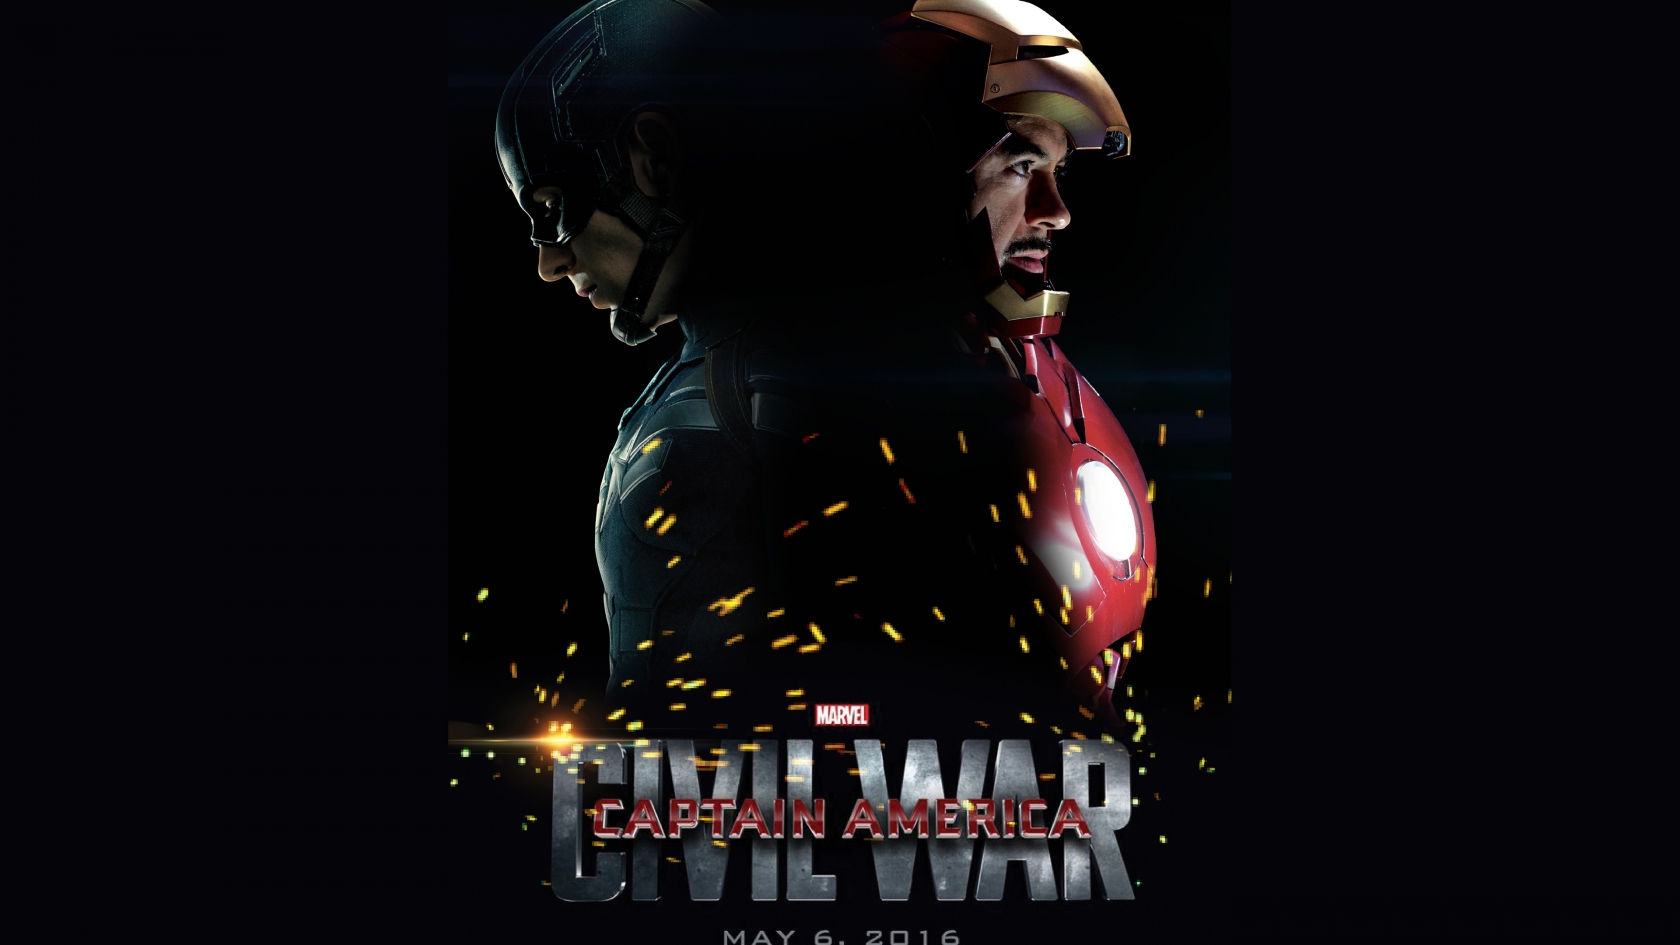 Captain America Civil War 2016 for 1680 x 945 HDTV resolution